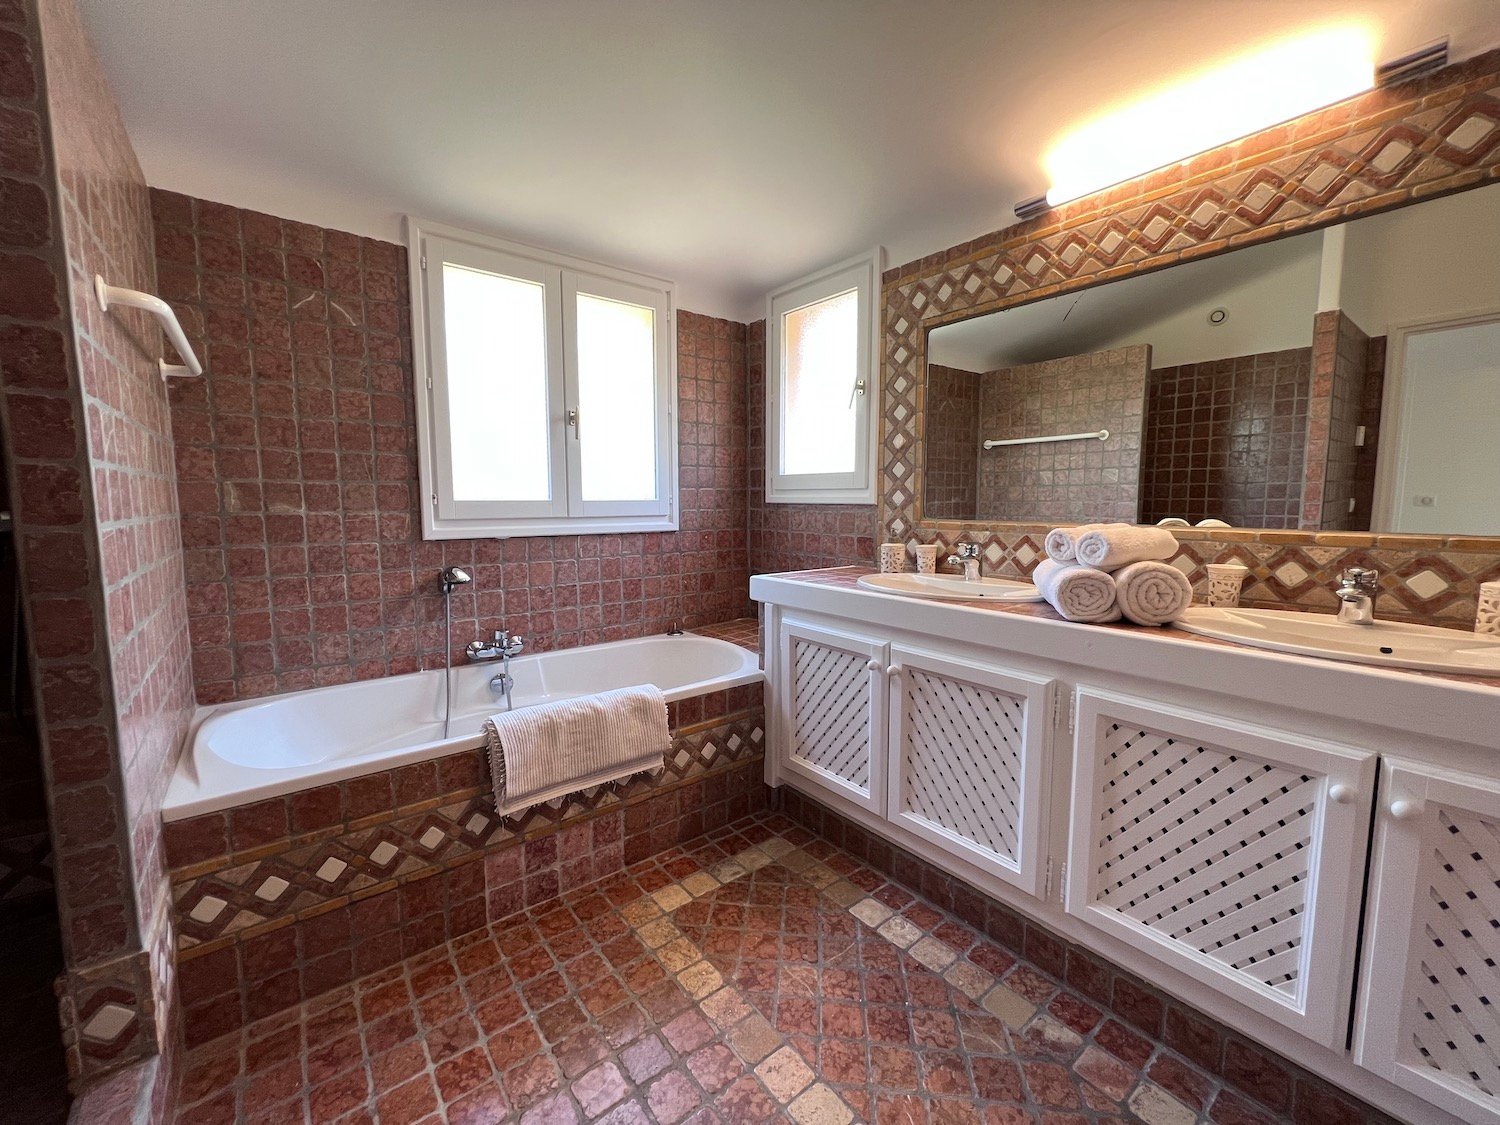 Salle de bain moderne villa luxe vacances en Corse location villa à Porto-Vecchio plages à pied Palombaggia et Santa Giulia Pinarello Plages Cala Rossa Location de vacances pisicne chauffée